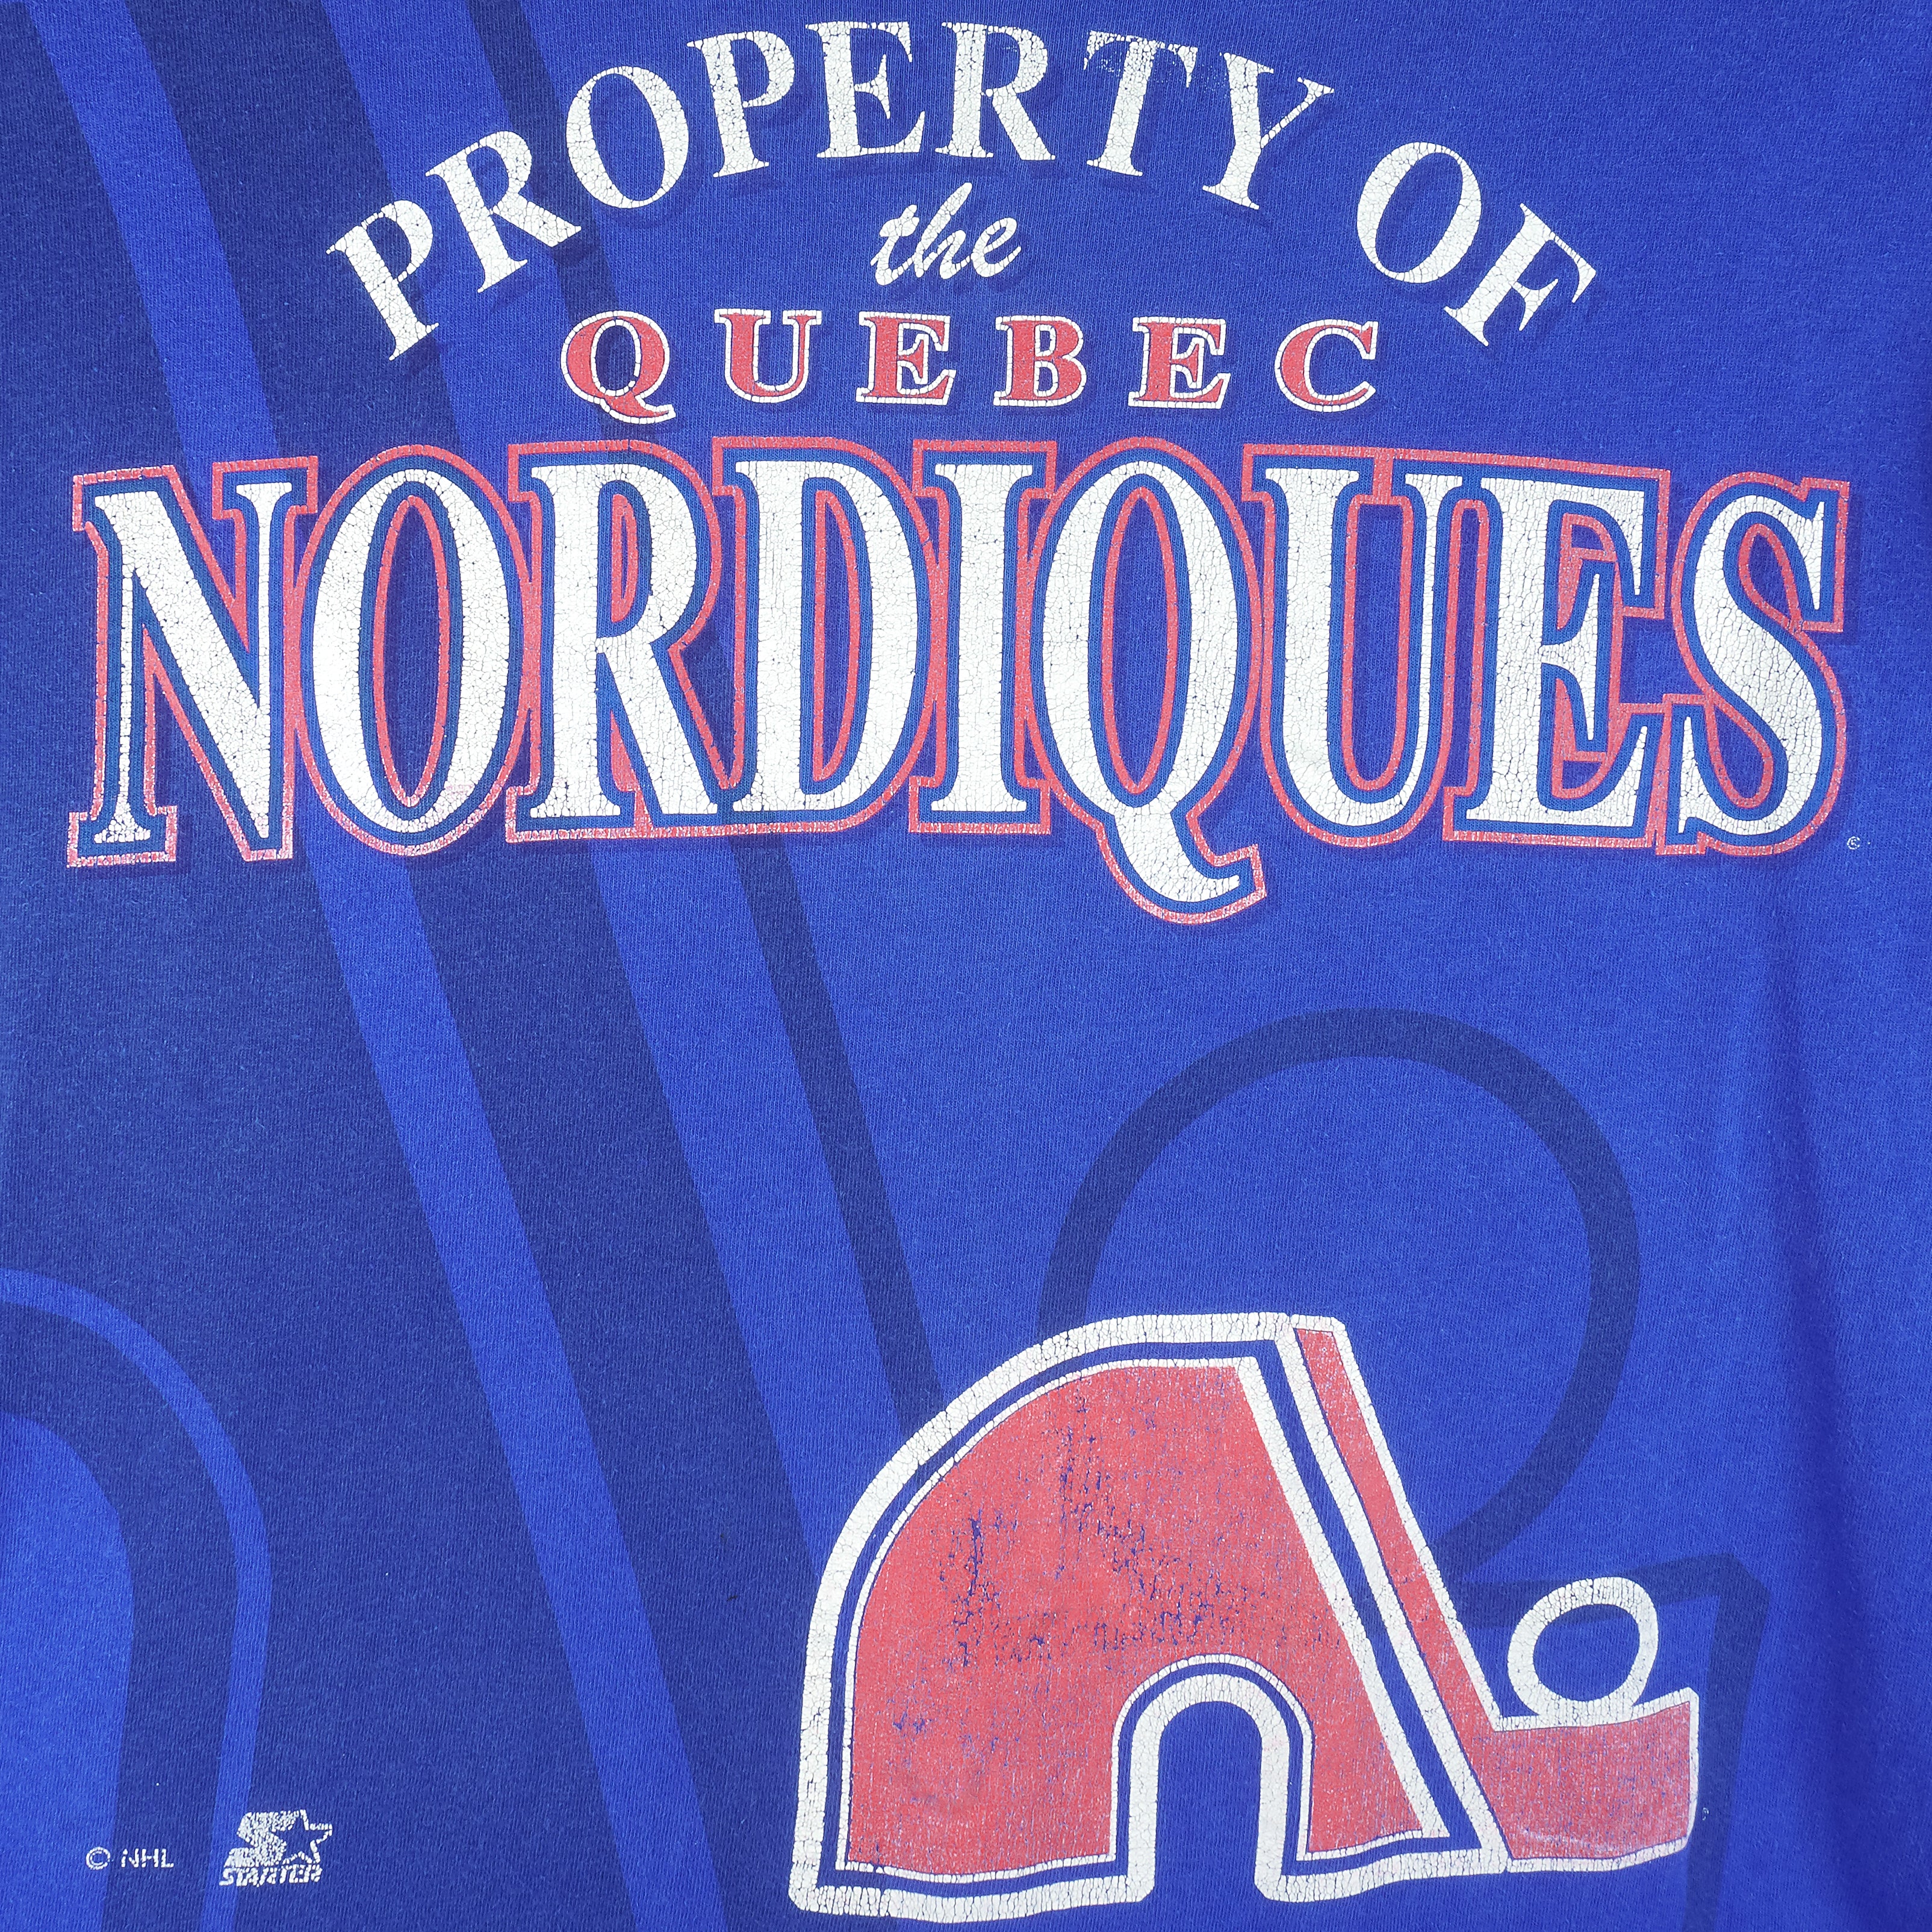 Quebec Nordiques Gear, Nordiques Jerseys, Quebec Nordiques Clothing,  Nordiques Pro Shop, Hockey Apparel